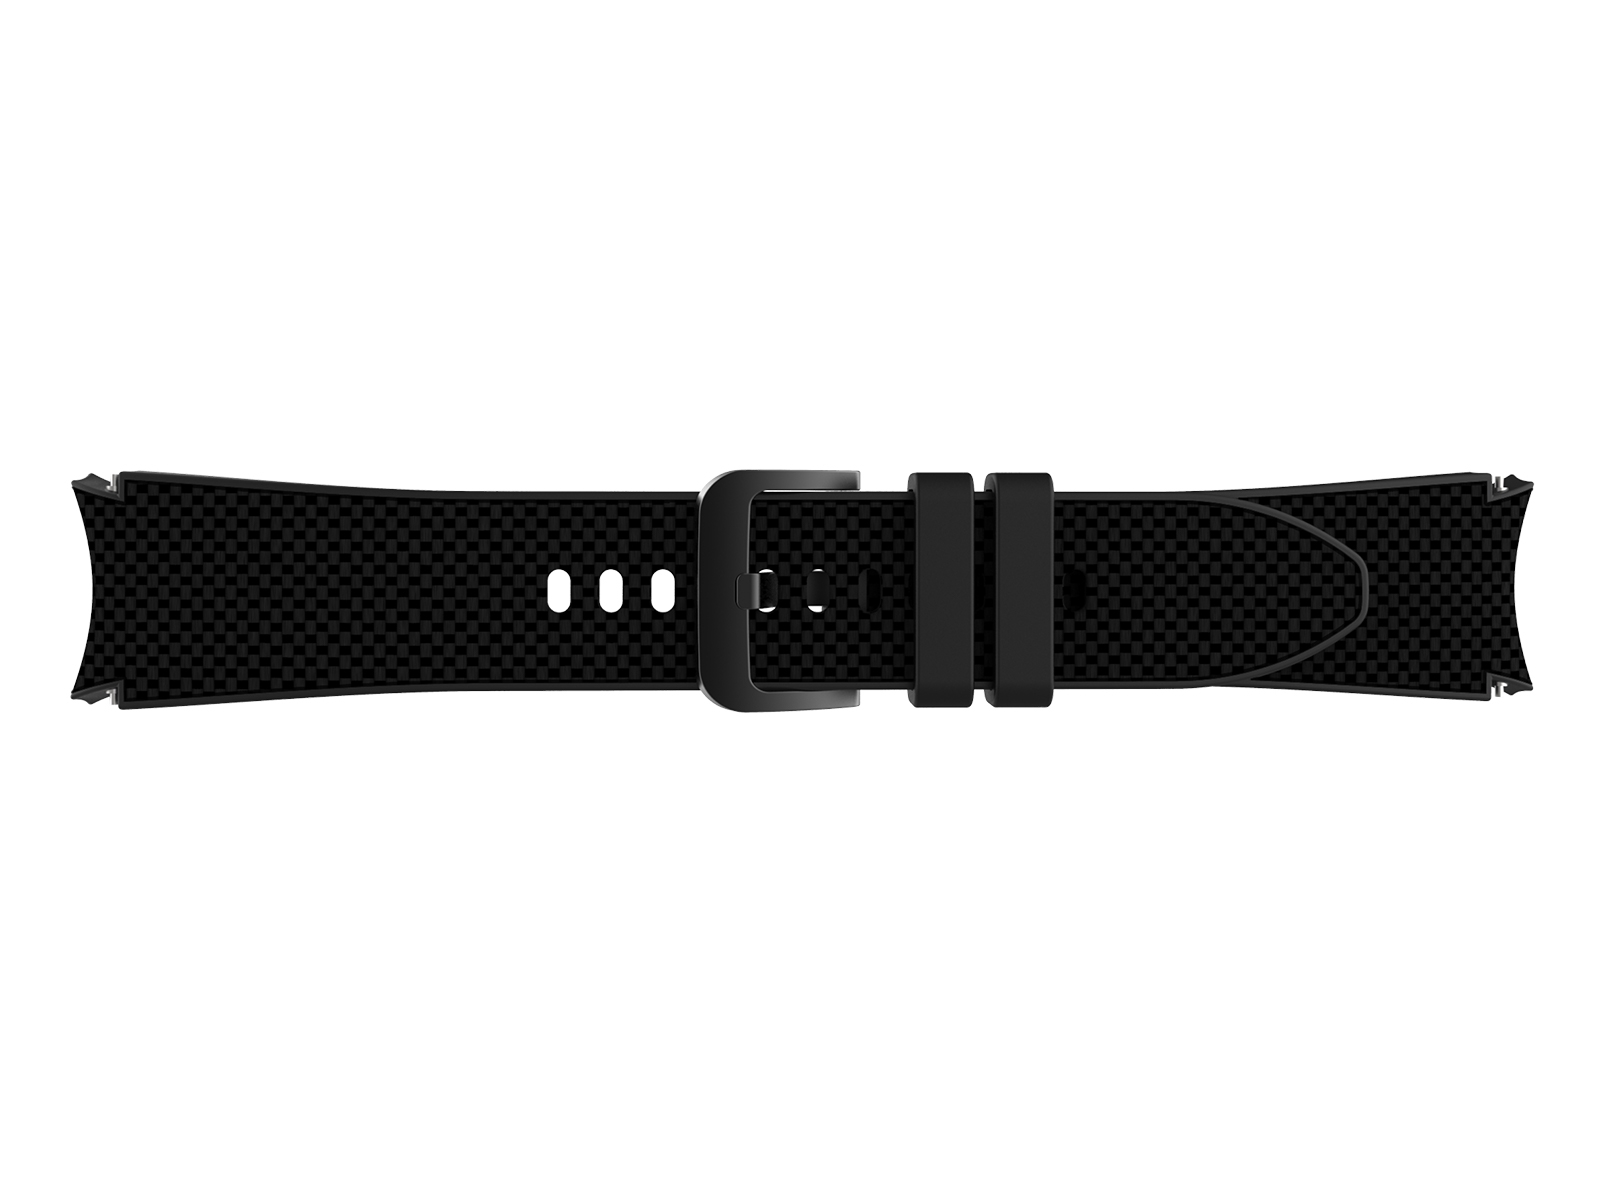 Samsung Galaxy Watch4 | Cordura Fabric & Silicone Hybrid | Black by Barton Watch Bands Black PVD